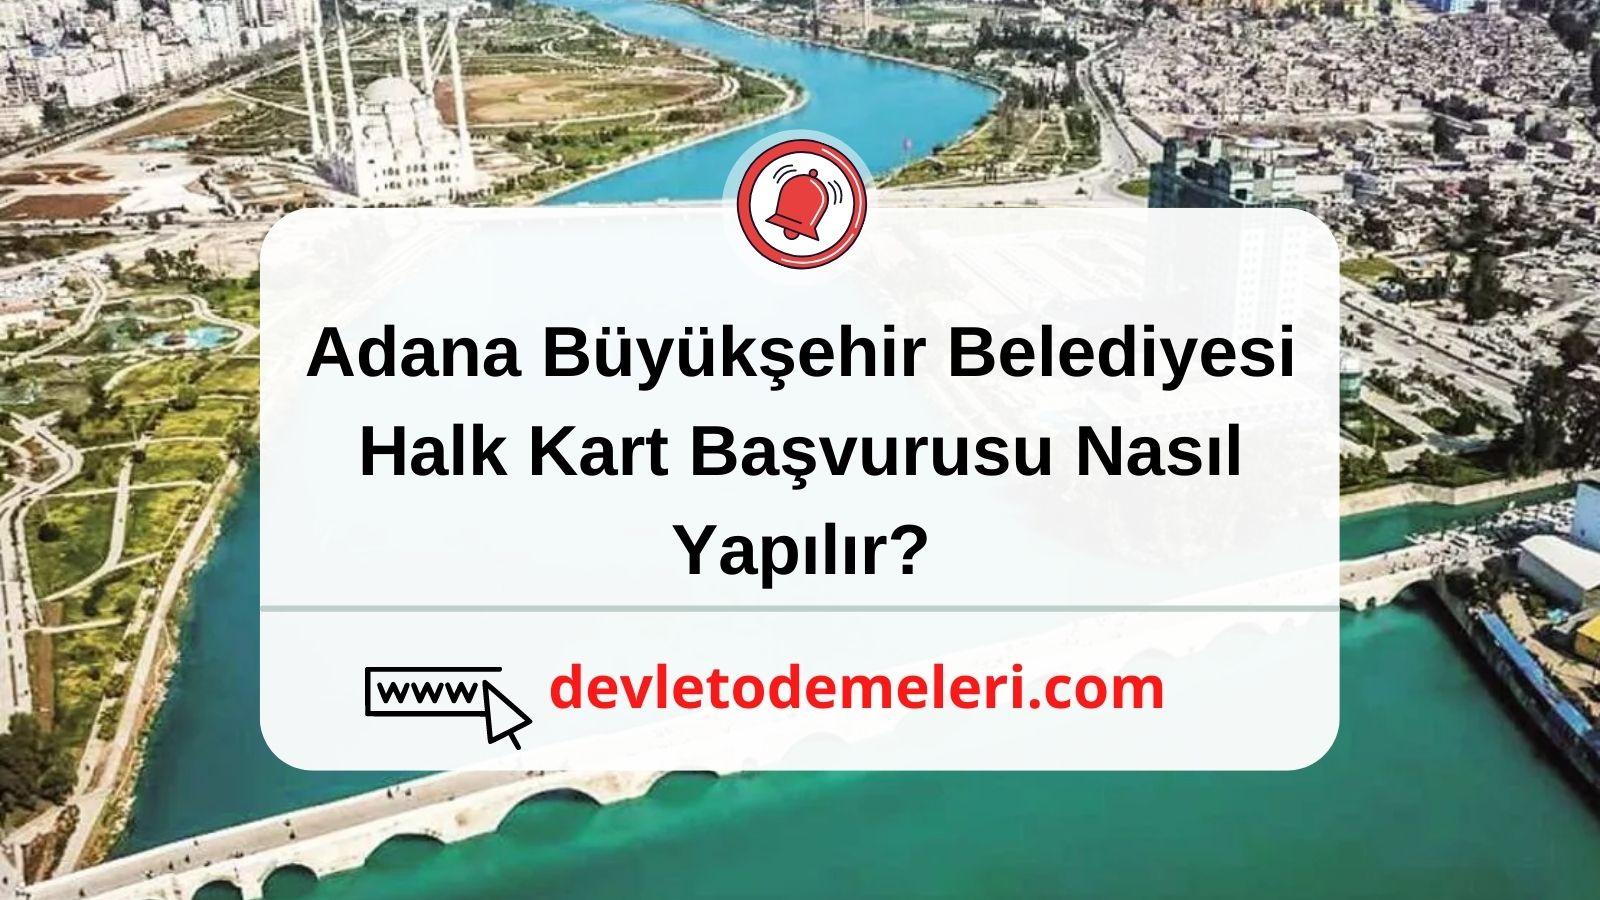 Adana Büyükşehir Belediyesi Halk Kart Başvurusu Nasıl Yapılır